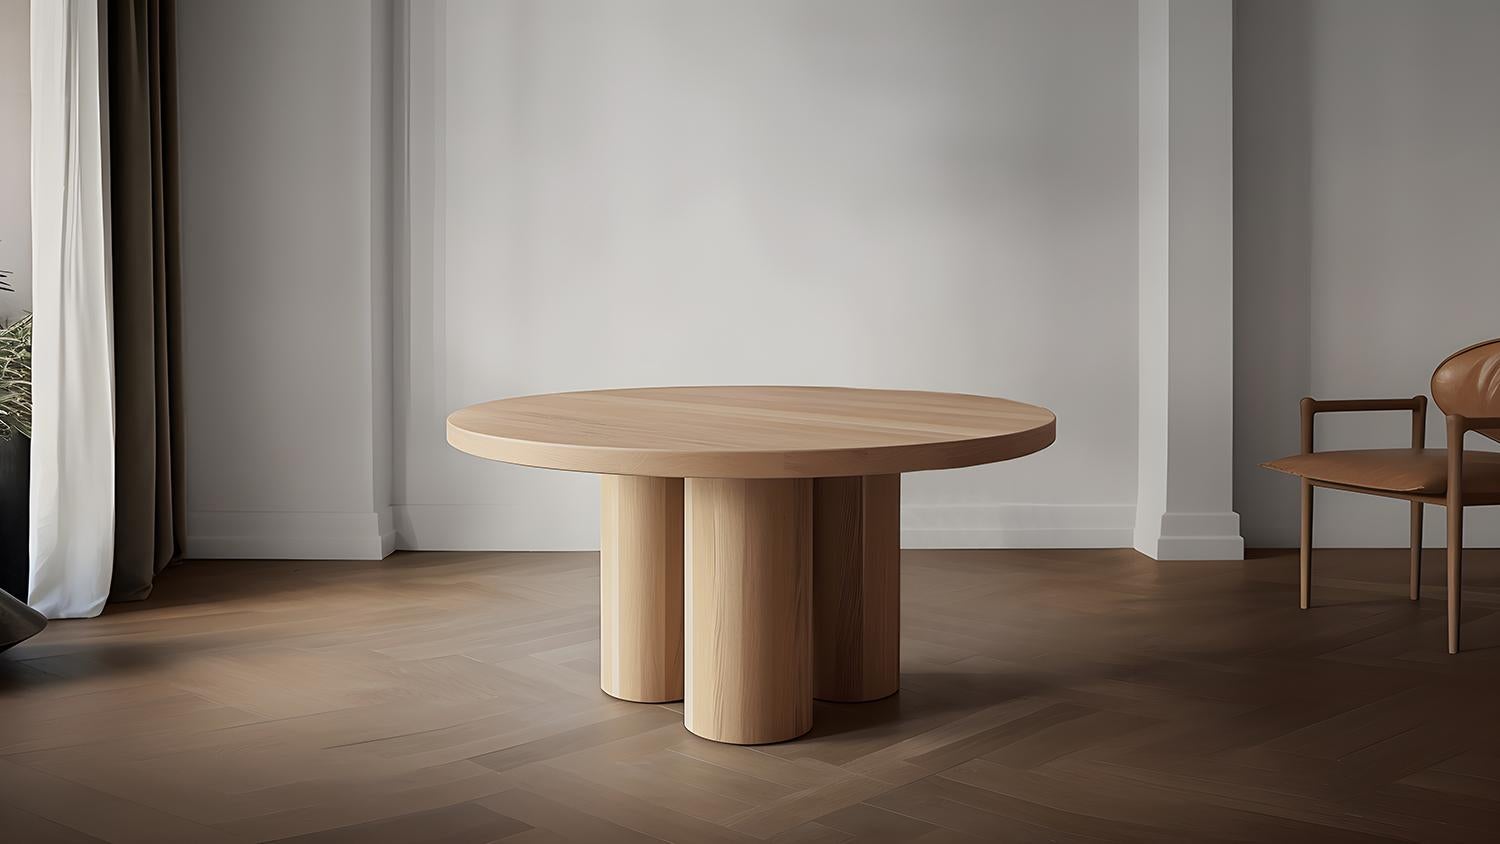 Podio Runder Esstisch

Das Designteam von NONO präsentiert einen Esstisch, der Eleganz und Modernität ausstrahlt. Das Fundament dieses Stücks besteht aus einer Gruppe zylindrischer Säulen, die eine stabile Basis für die schöne runde Platte bilden.